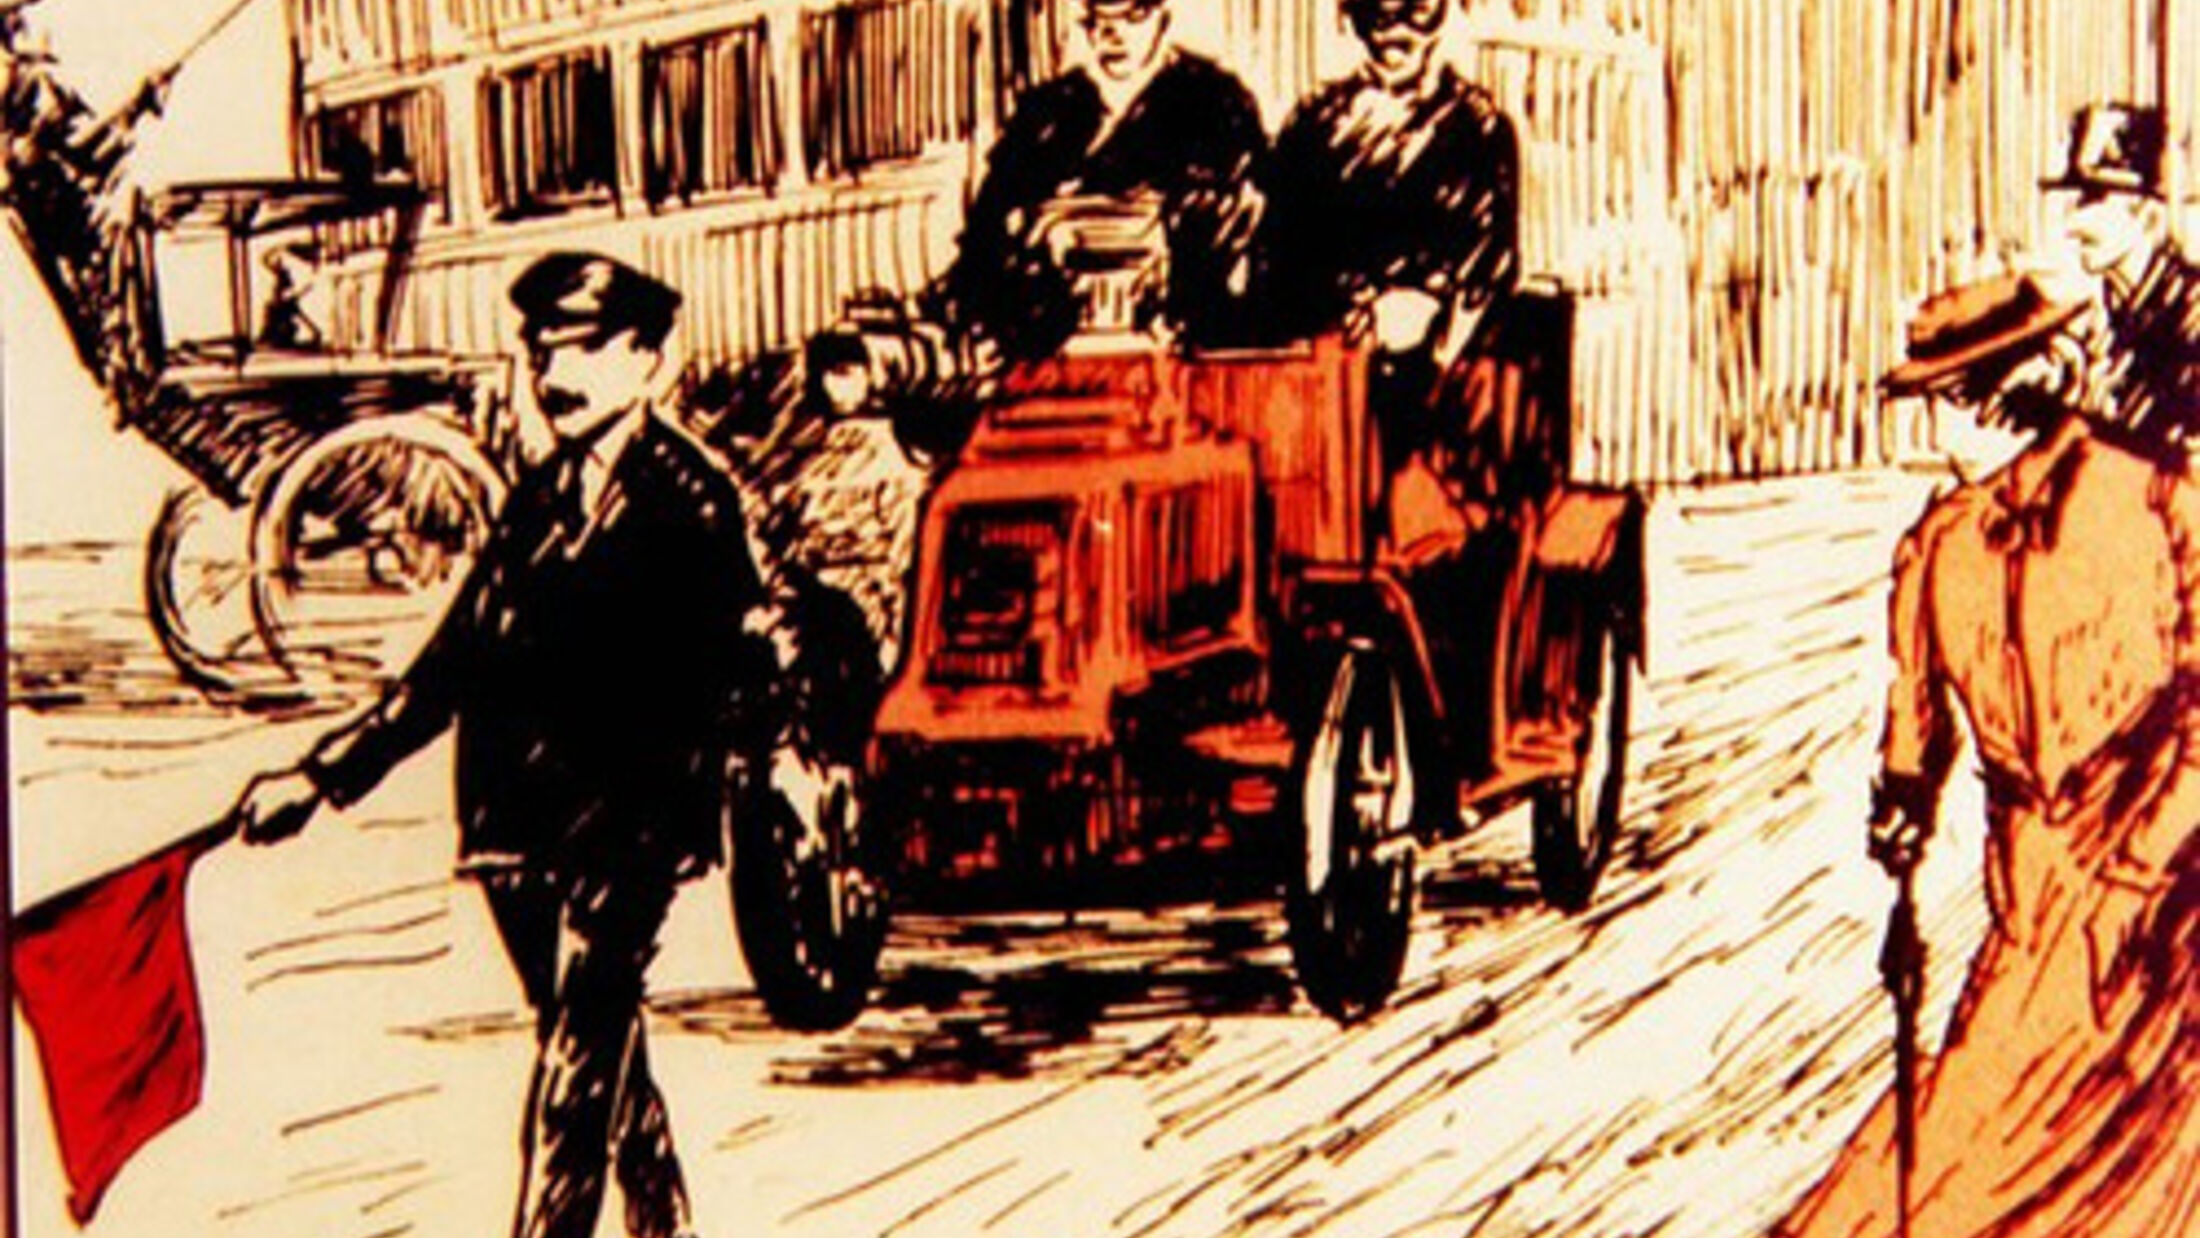 125 Jahre ATZ  Kleinwagen-Klassiker der Automobil-Geschichte